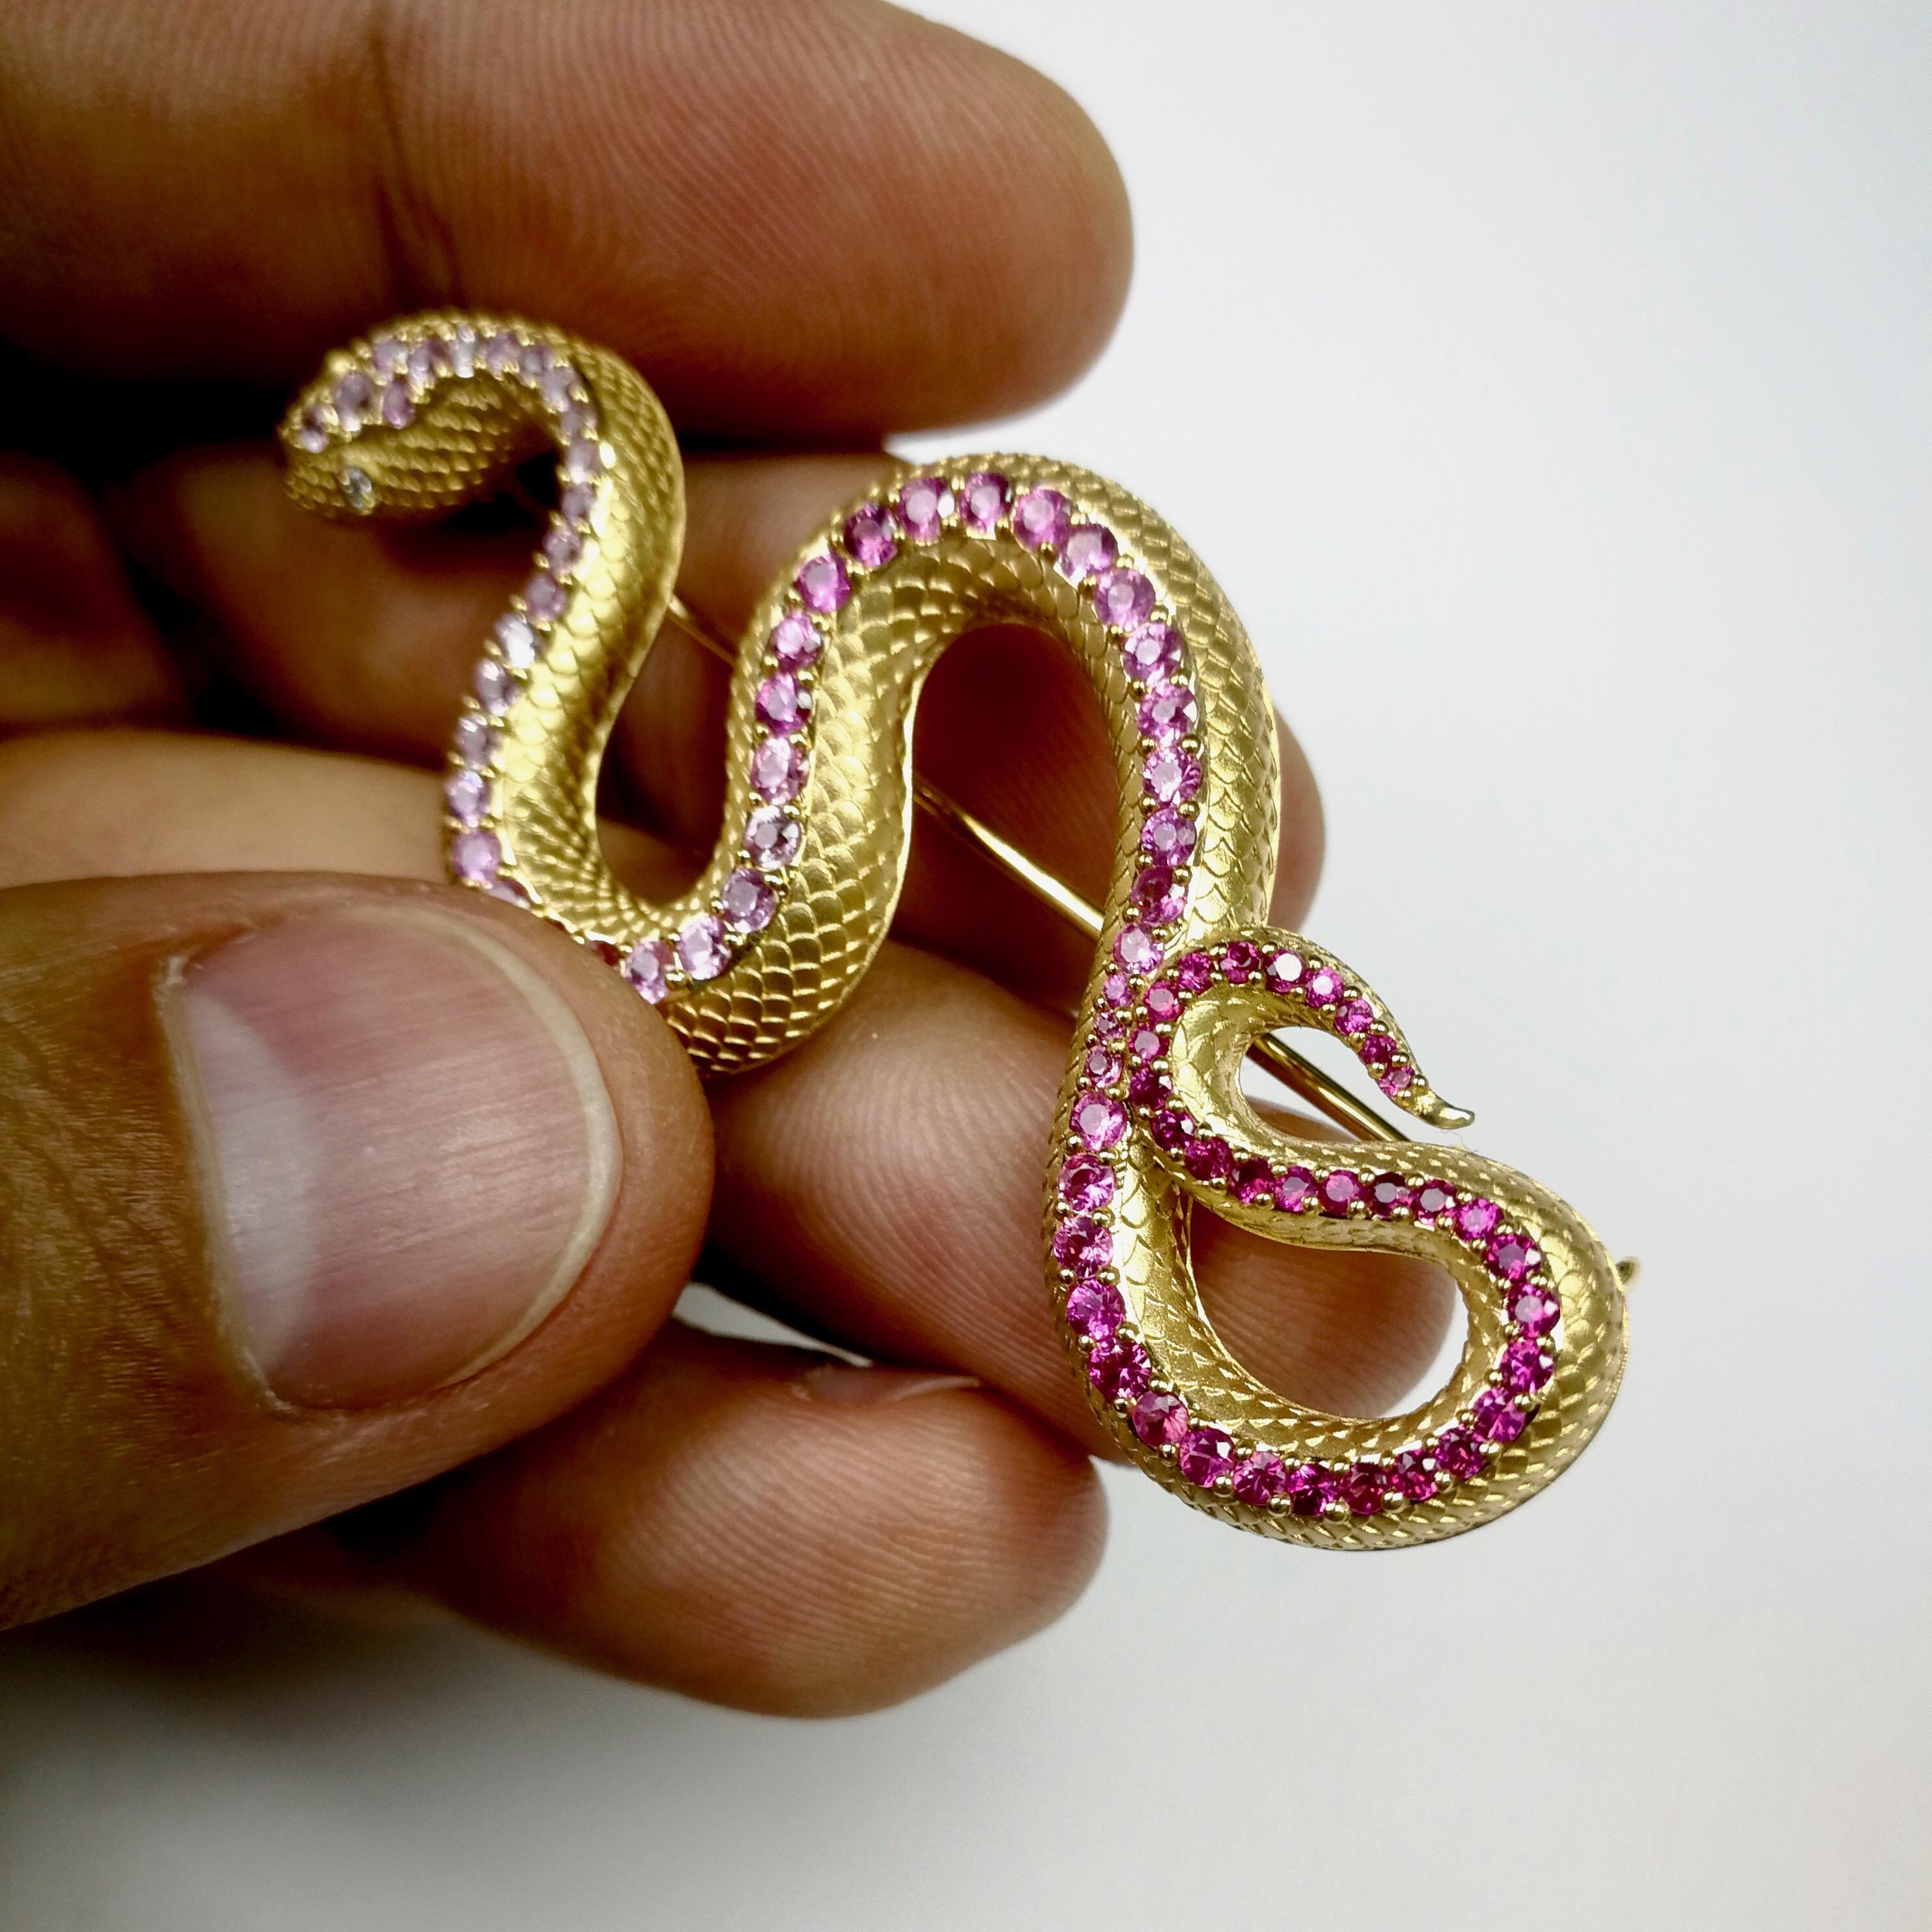 Rosa Saphir Diamanten 18 Karat Gelbgold Schlange Ring Ohrringe Brosche Suite

Werfen Sie einen Blick auf diese hochdetaillierte Suite, die die ganze Weisheit der Schlange verteilt. Sorgfältig ausgewählte Farbabstufungen von rosa Saphiren zu